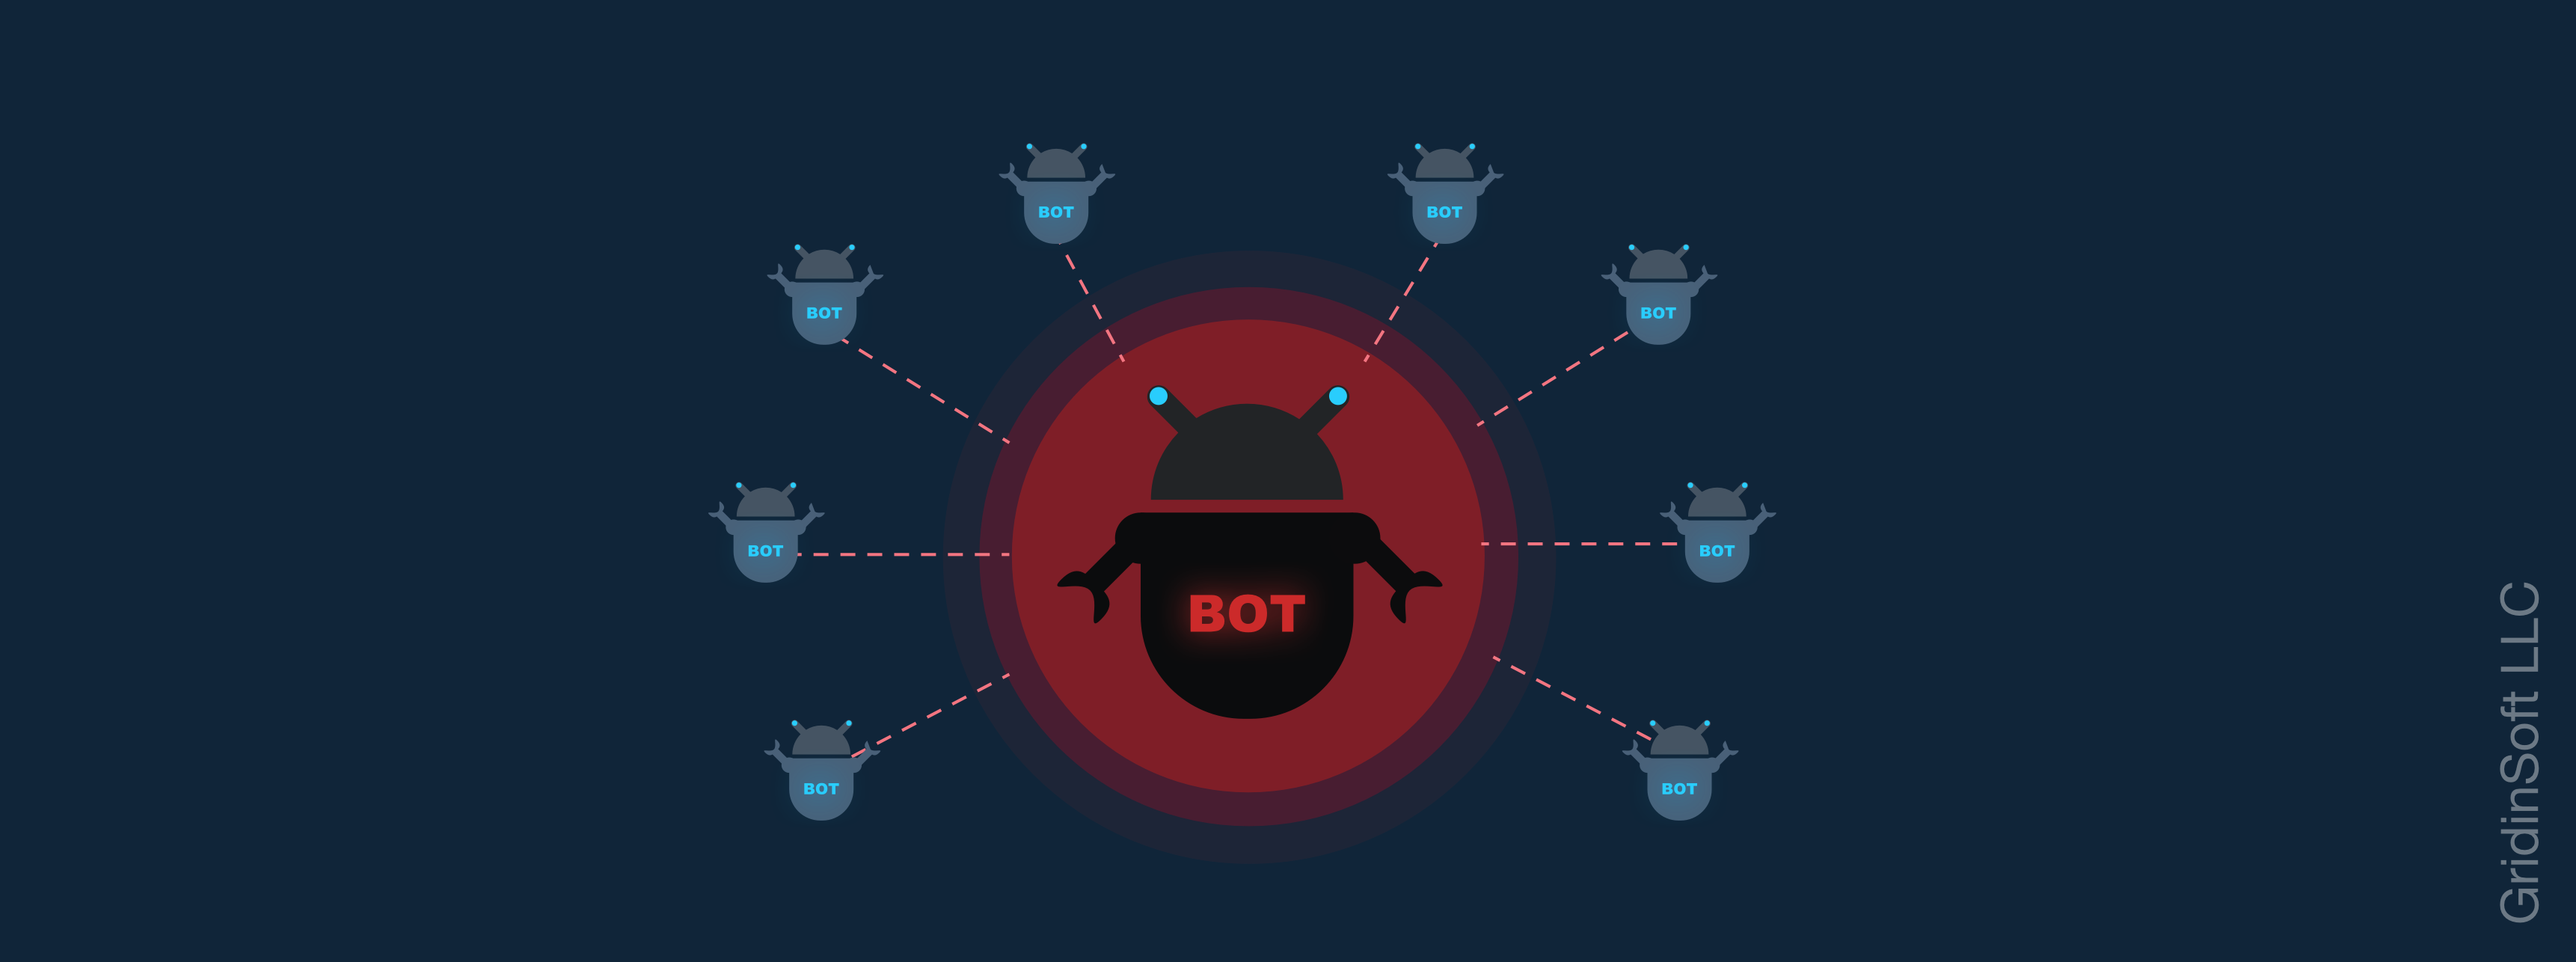 The danger of botnet network